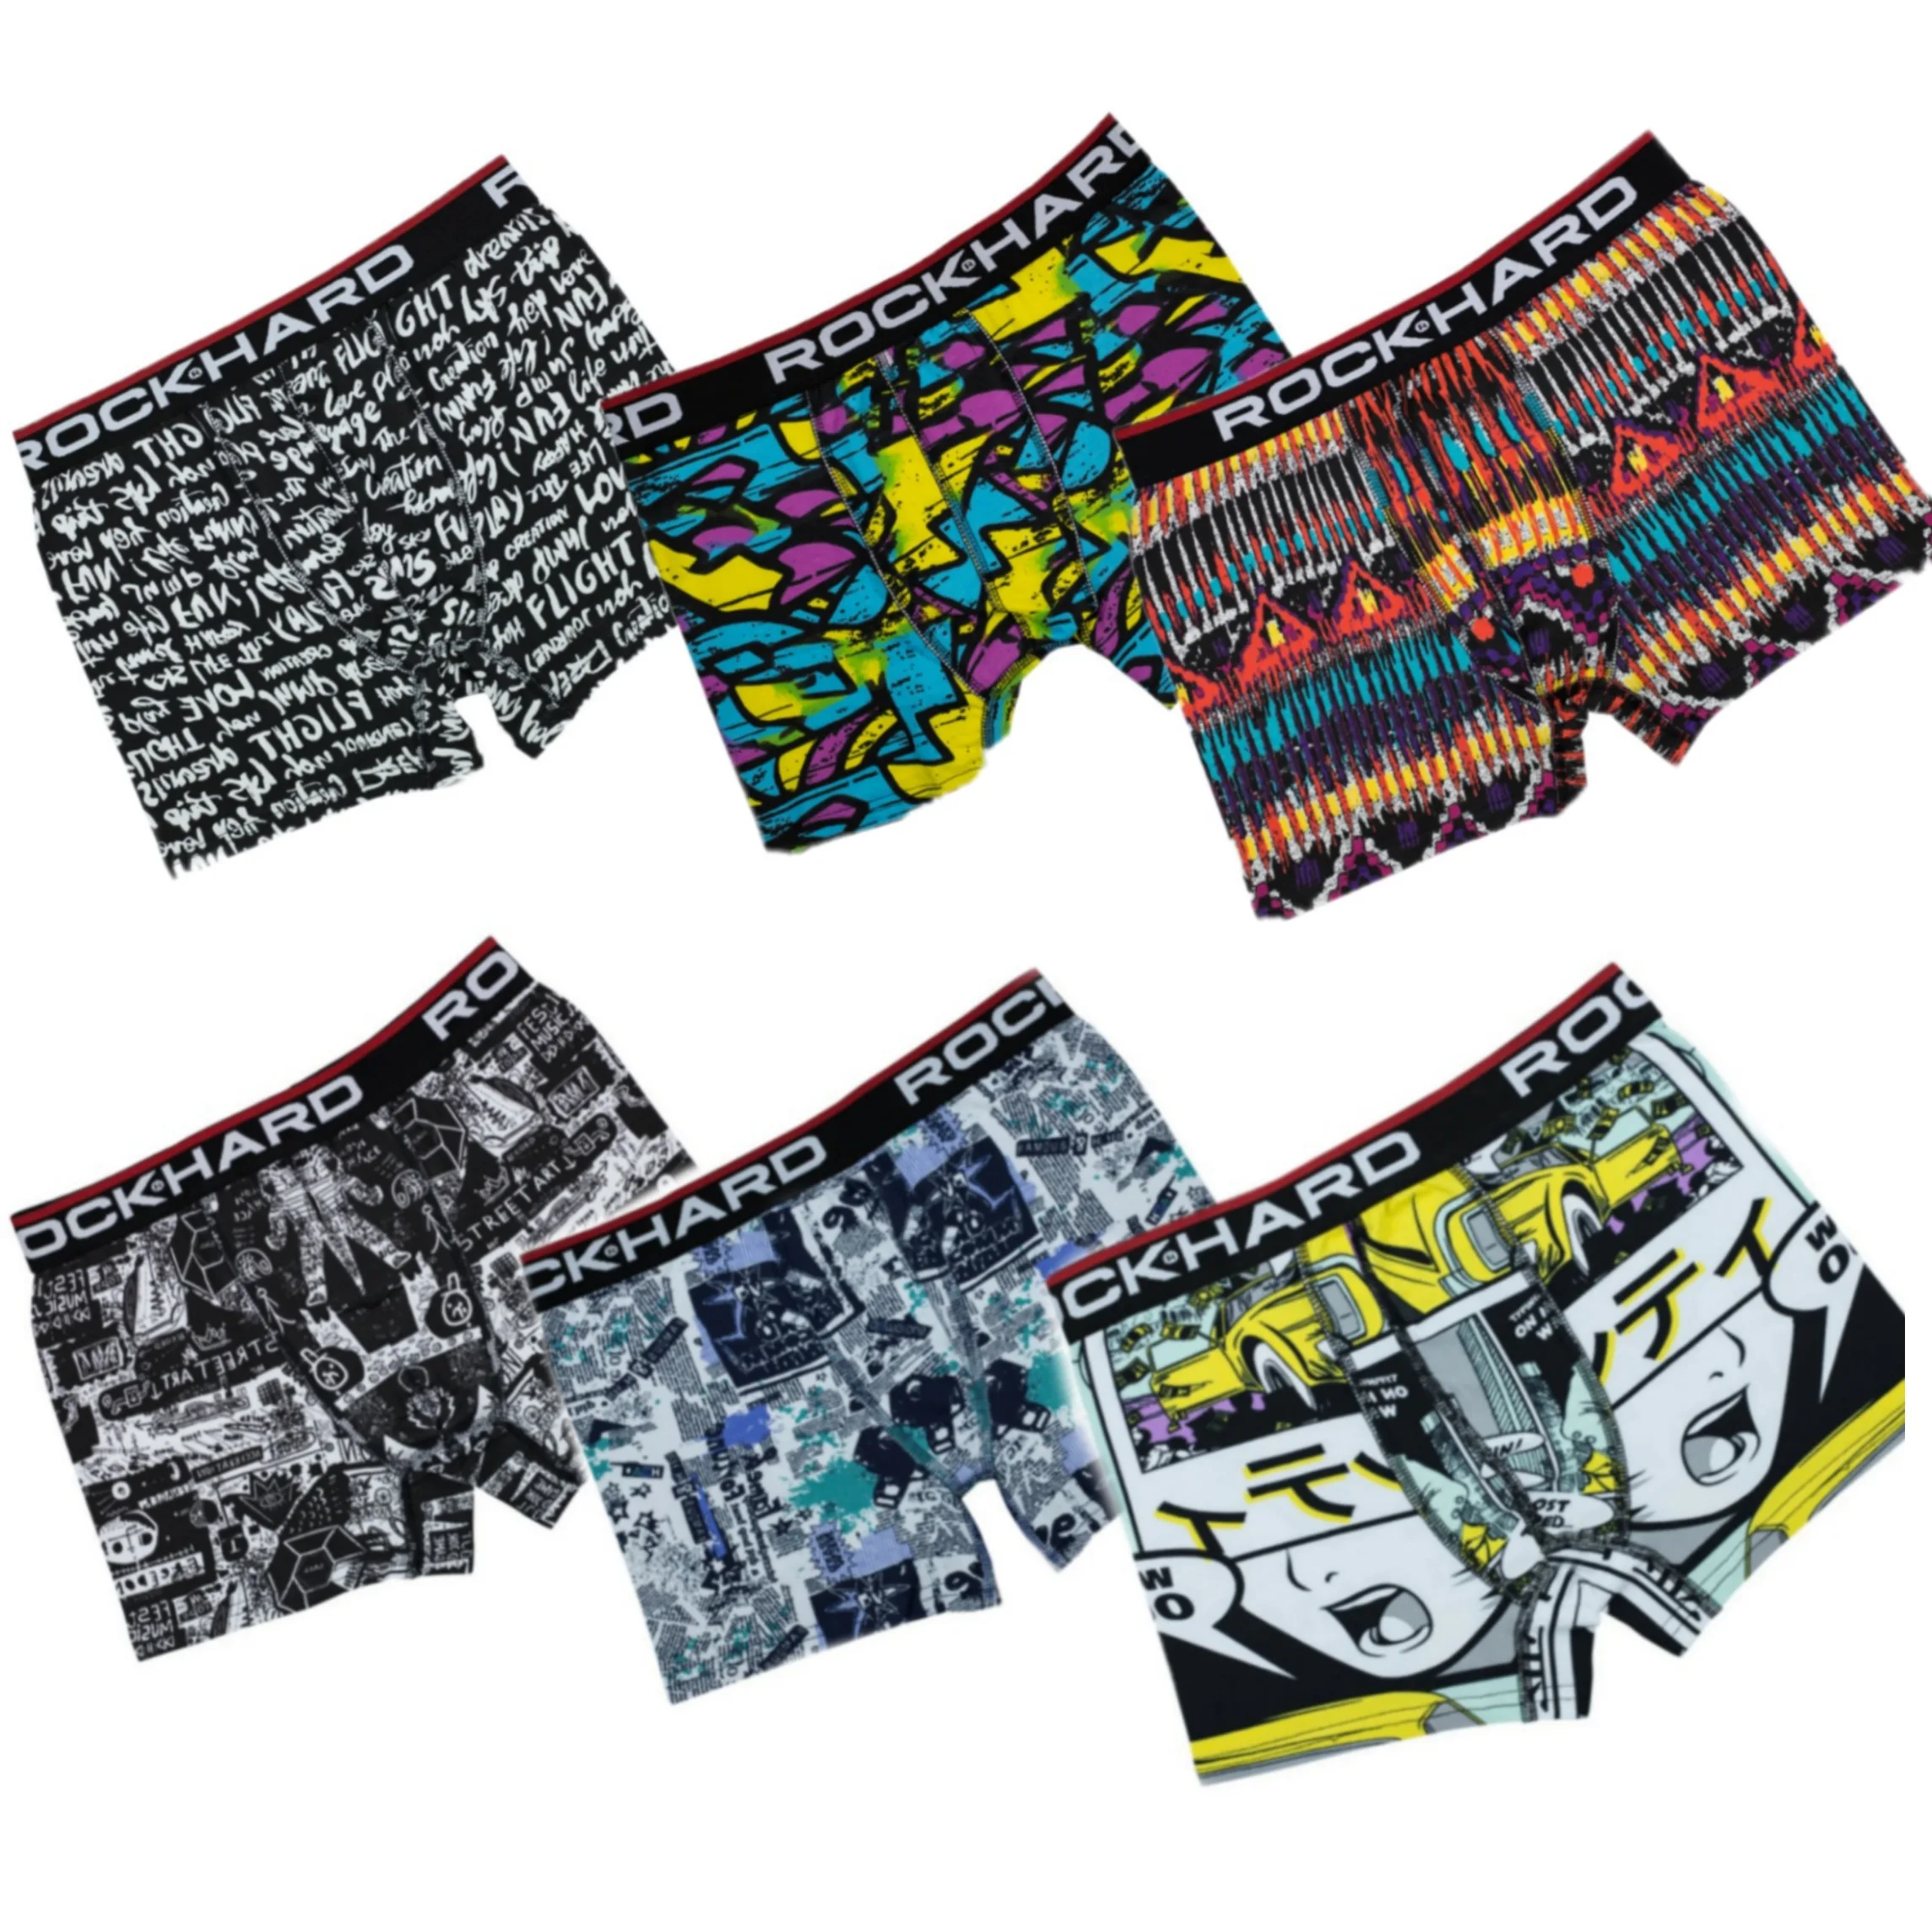 Men's Boxer Shorts 6 Pieces Patterned Boxer Shorts Lycra Flexible Product Quality Fabric Underwear For Men Underwear 6 Pcs Boxer